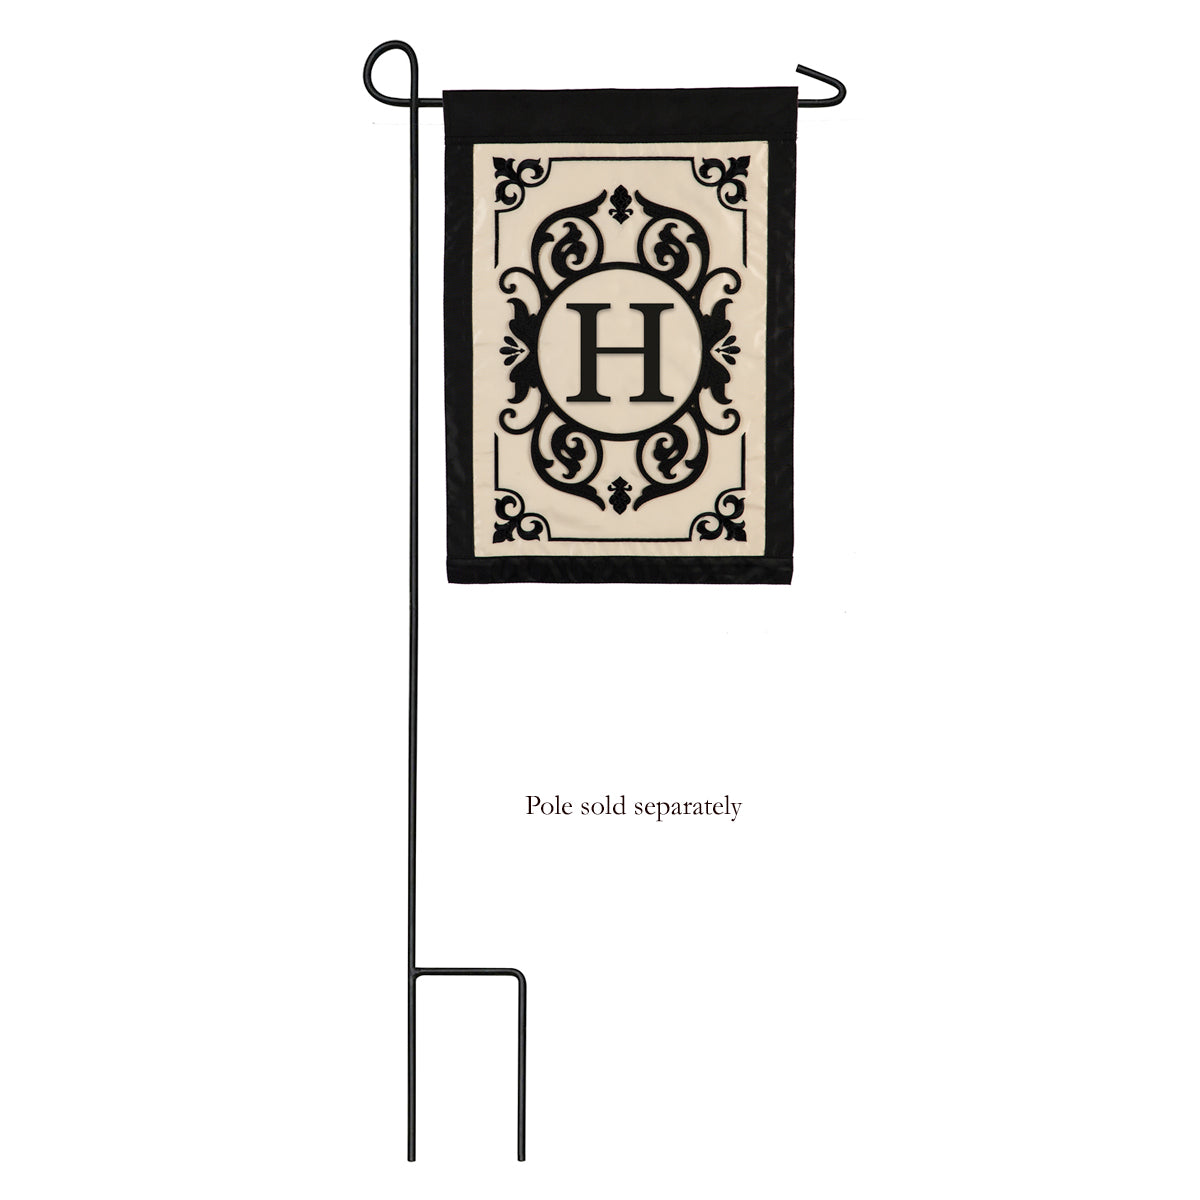 Cambridge Monogram Garden Applique Flag, "H"